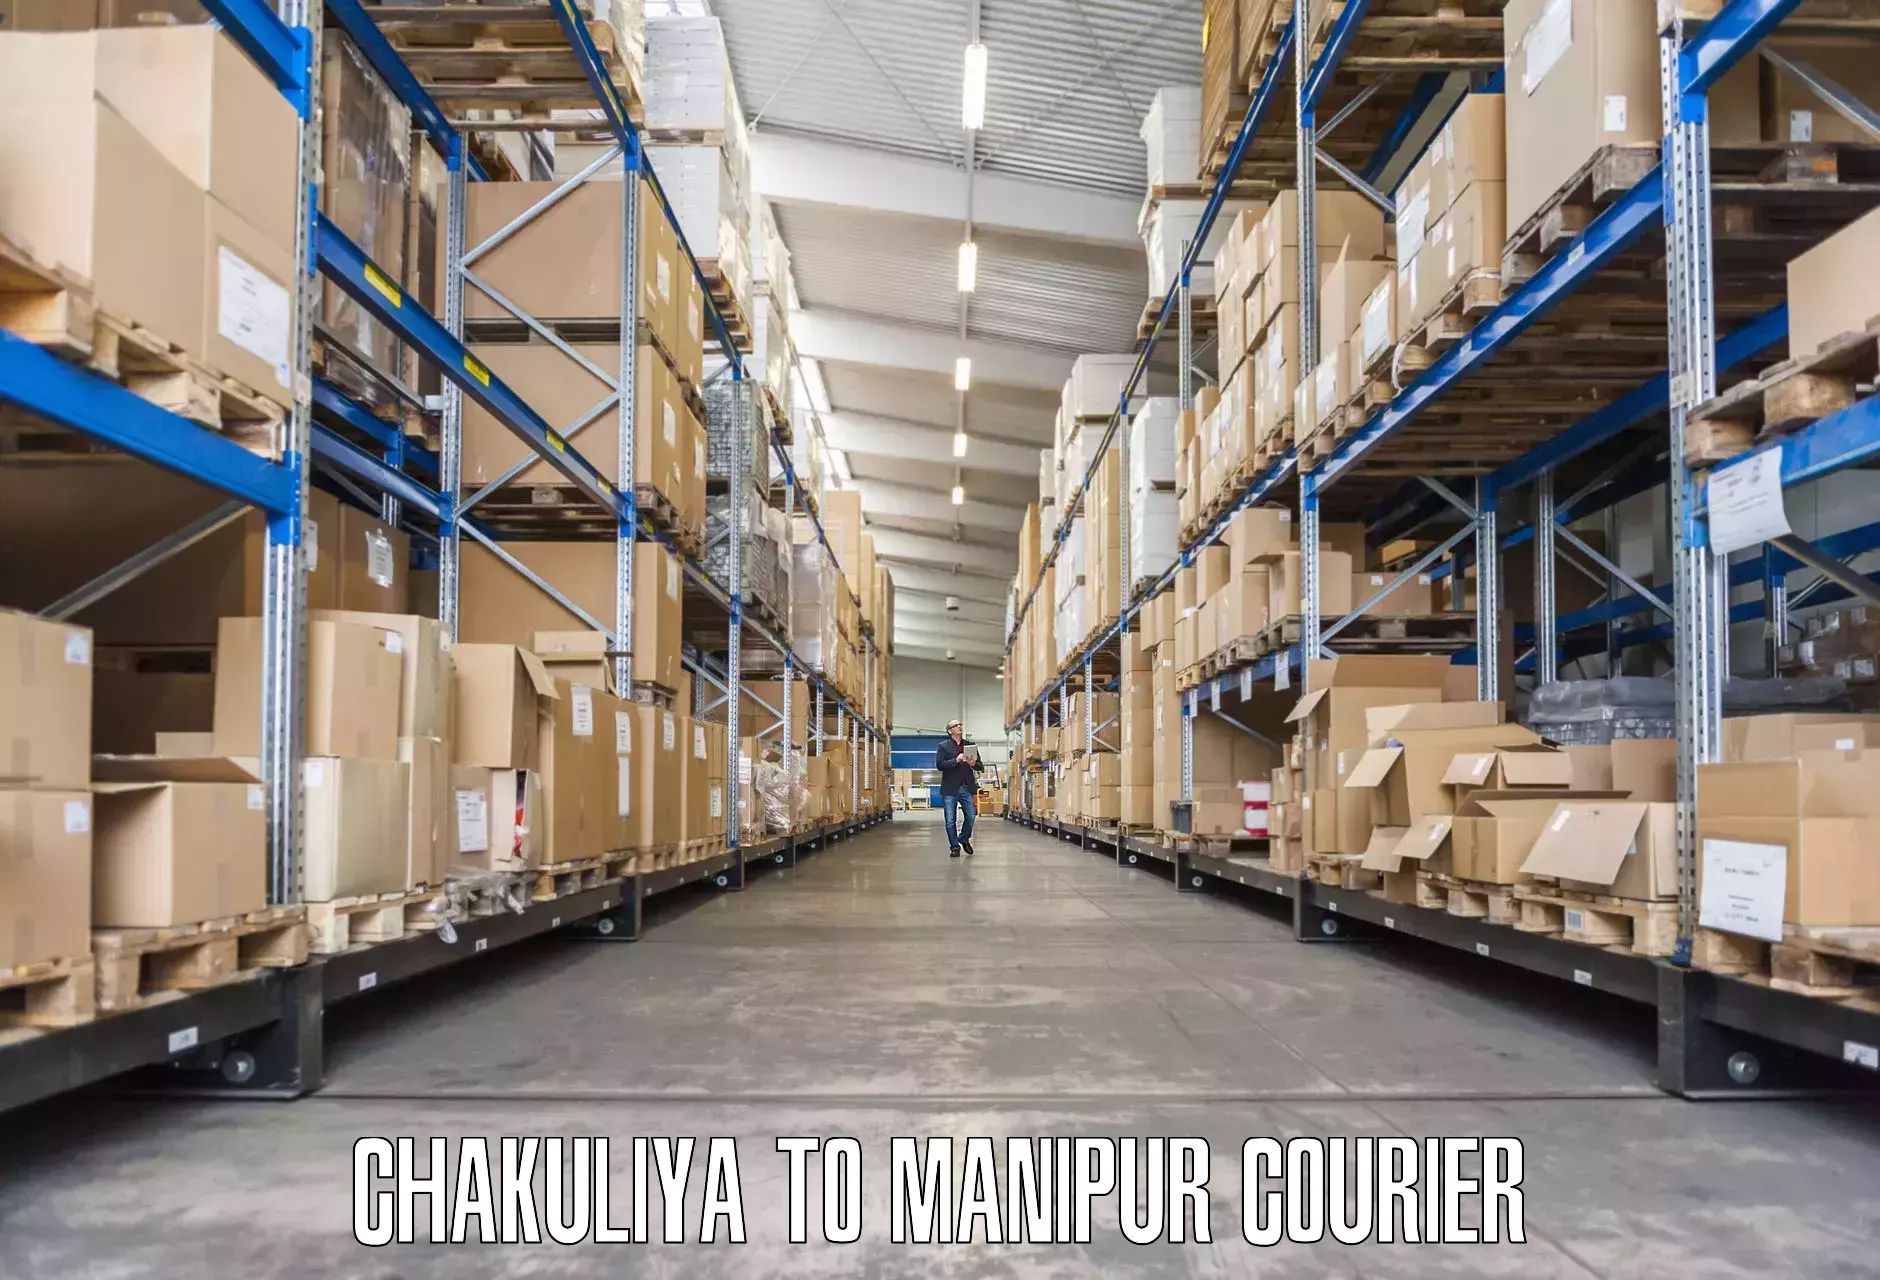 Furniture transport service Chakuliya to Manipur